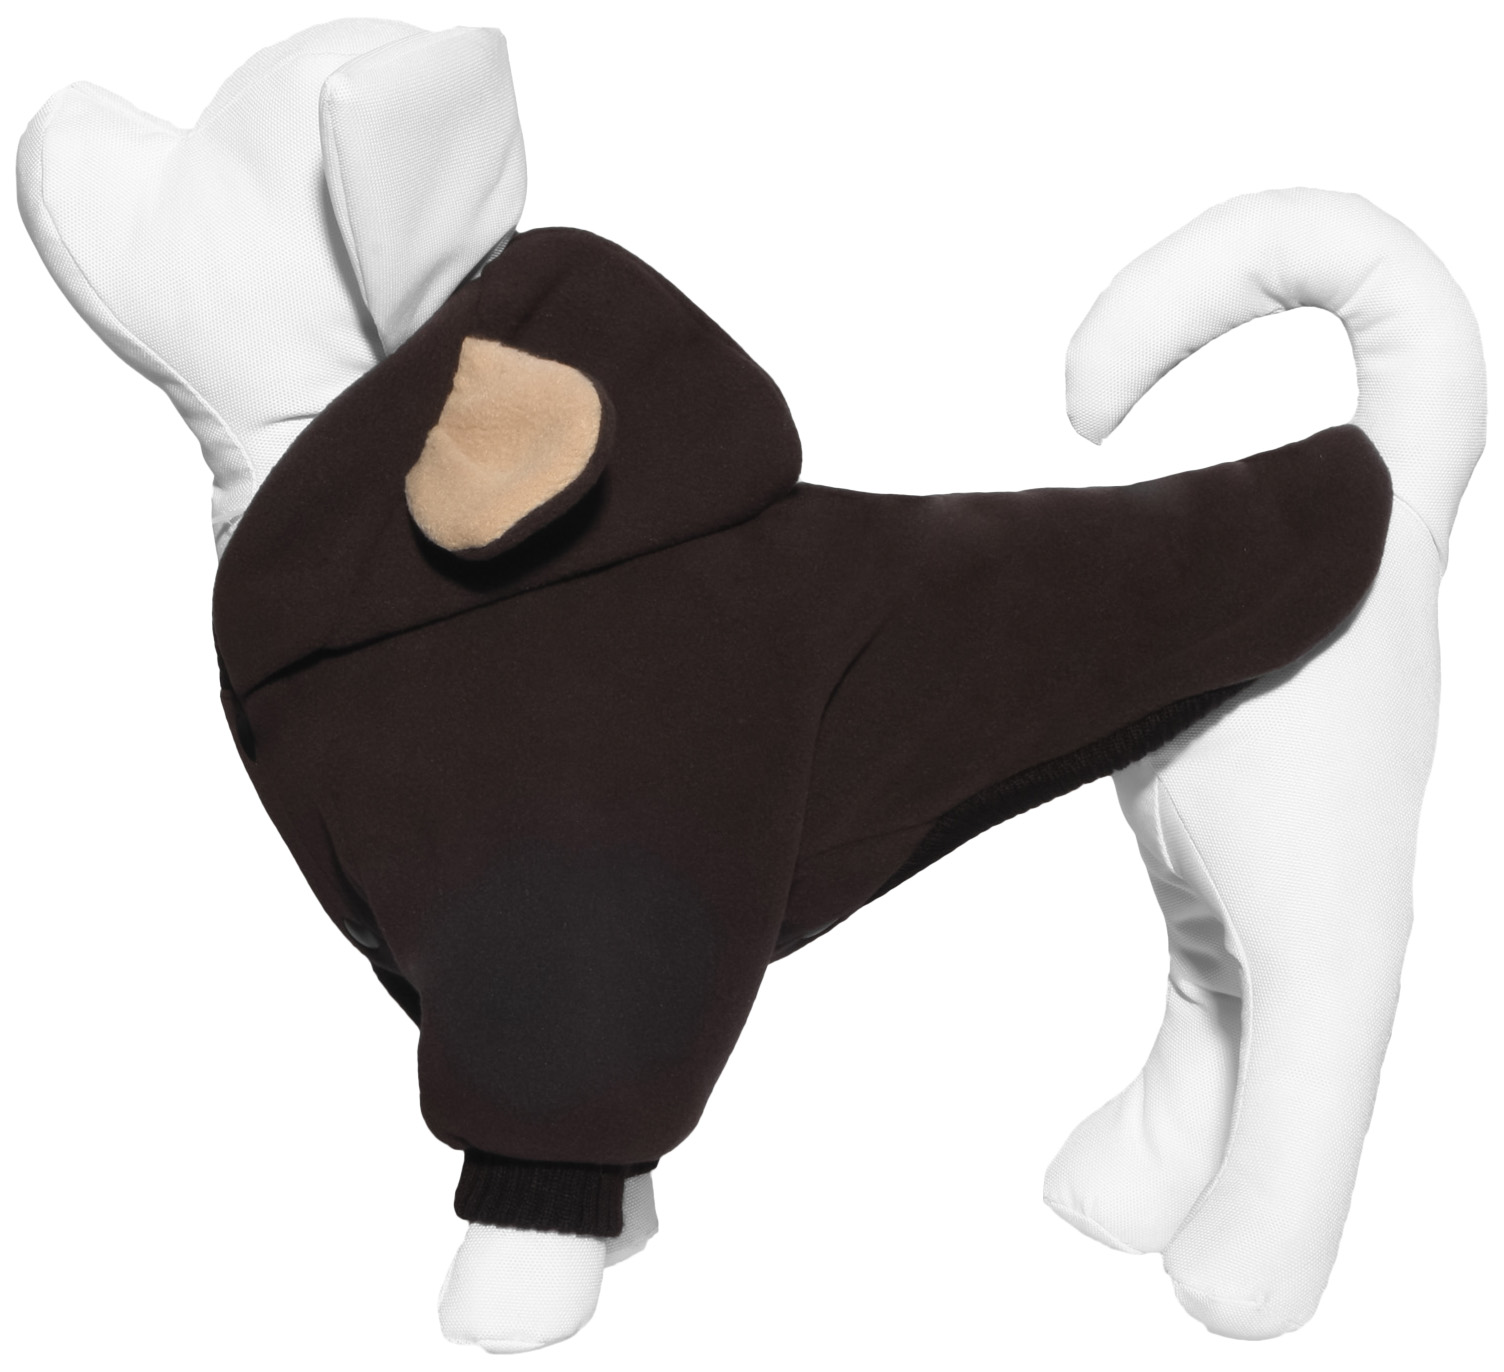 Толстовка для собак Tappi одежда Варгоши, унисекс, коричневый, M, длина спины 27 см